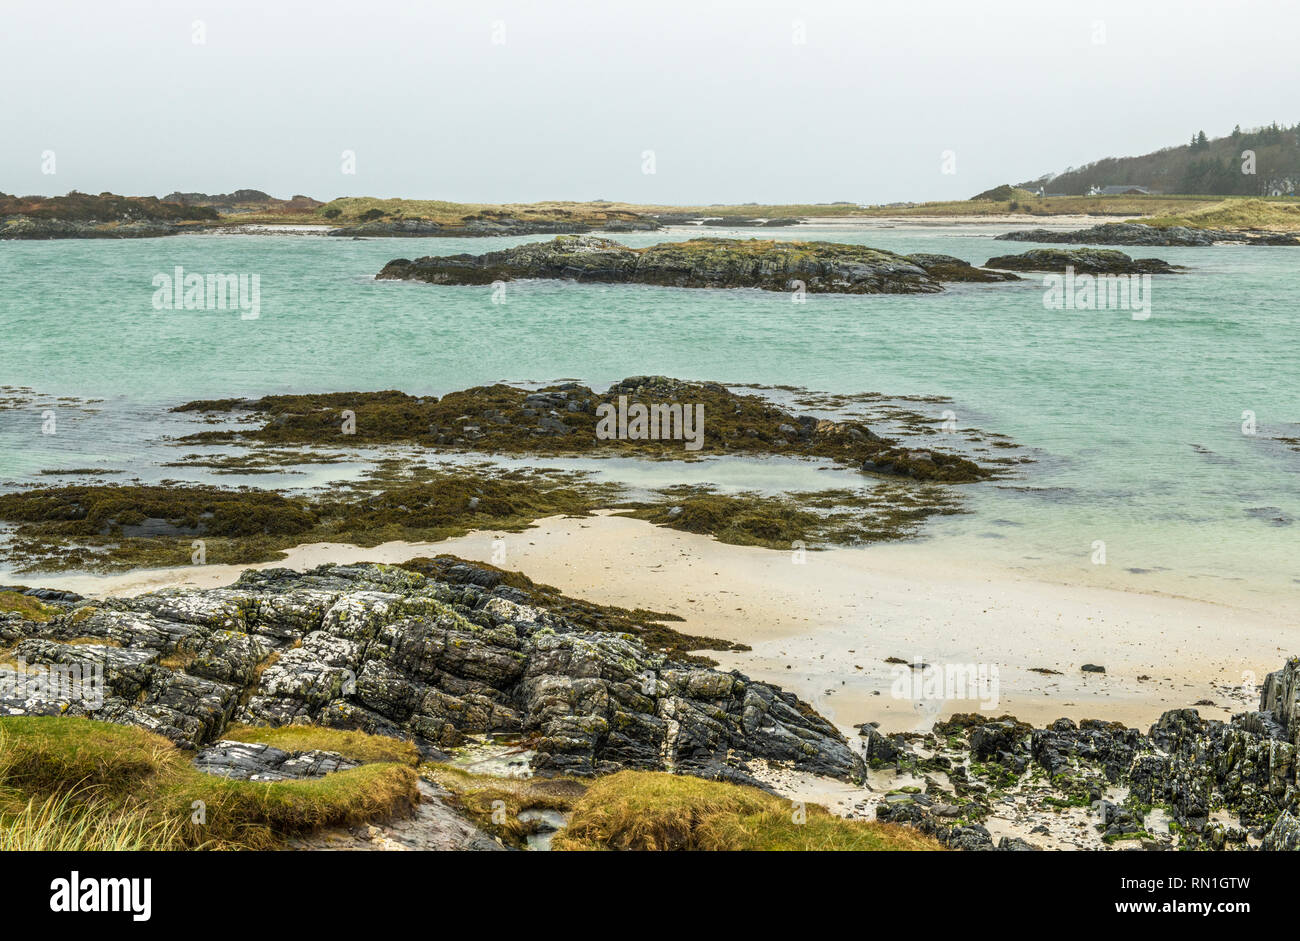 Playa de Traigh en el oeste de la costa escocesa cerca de Mallaig, fotografiado en un día, pero aún meteorológicas con mucho detalle de las rocas, la arena y el mar. Foto de stock